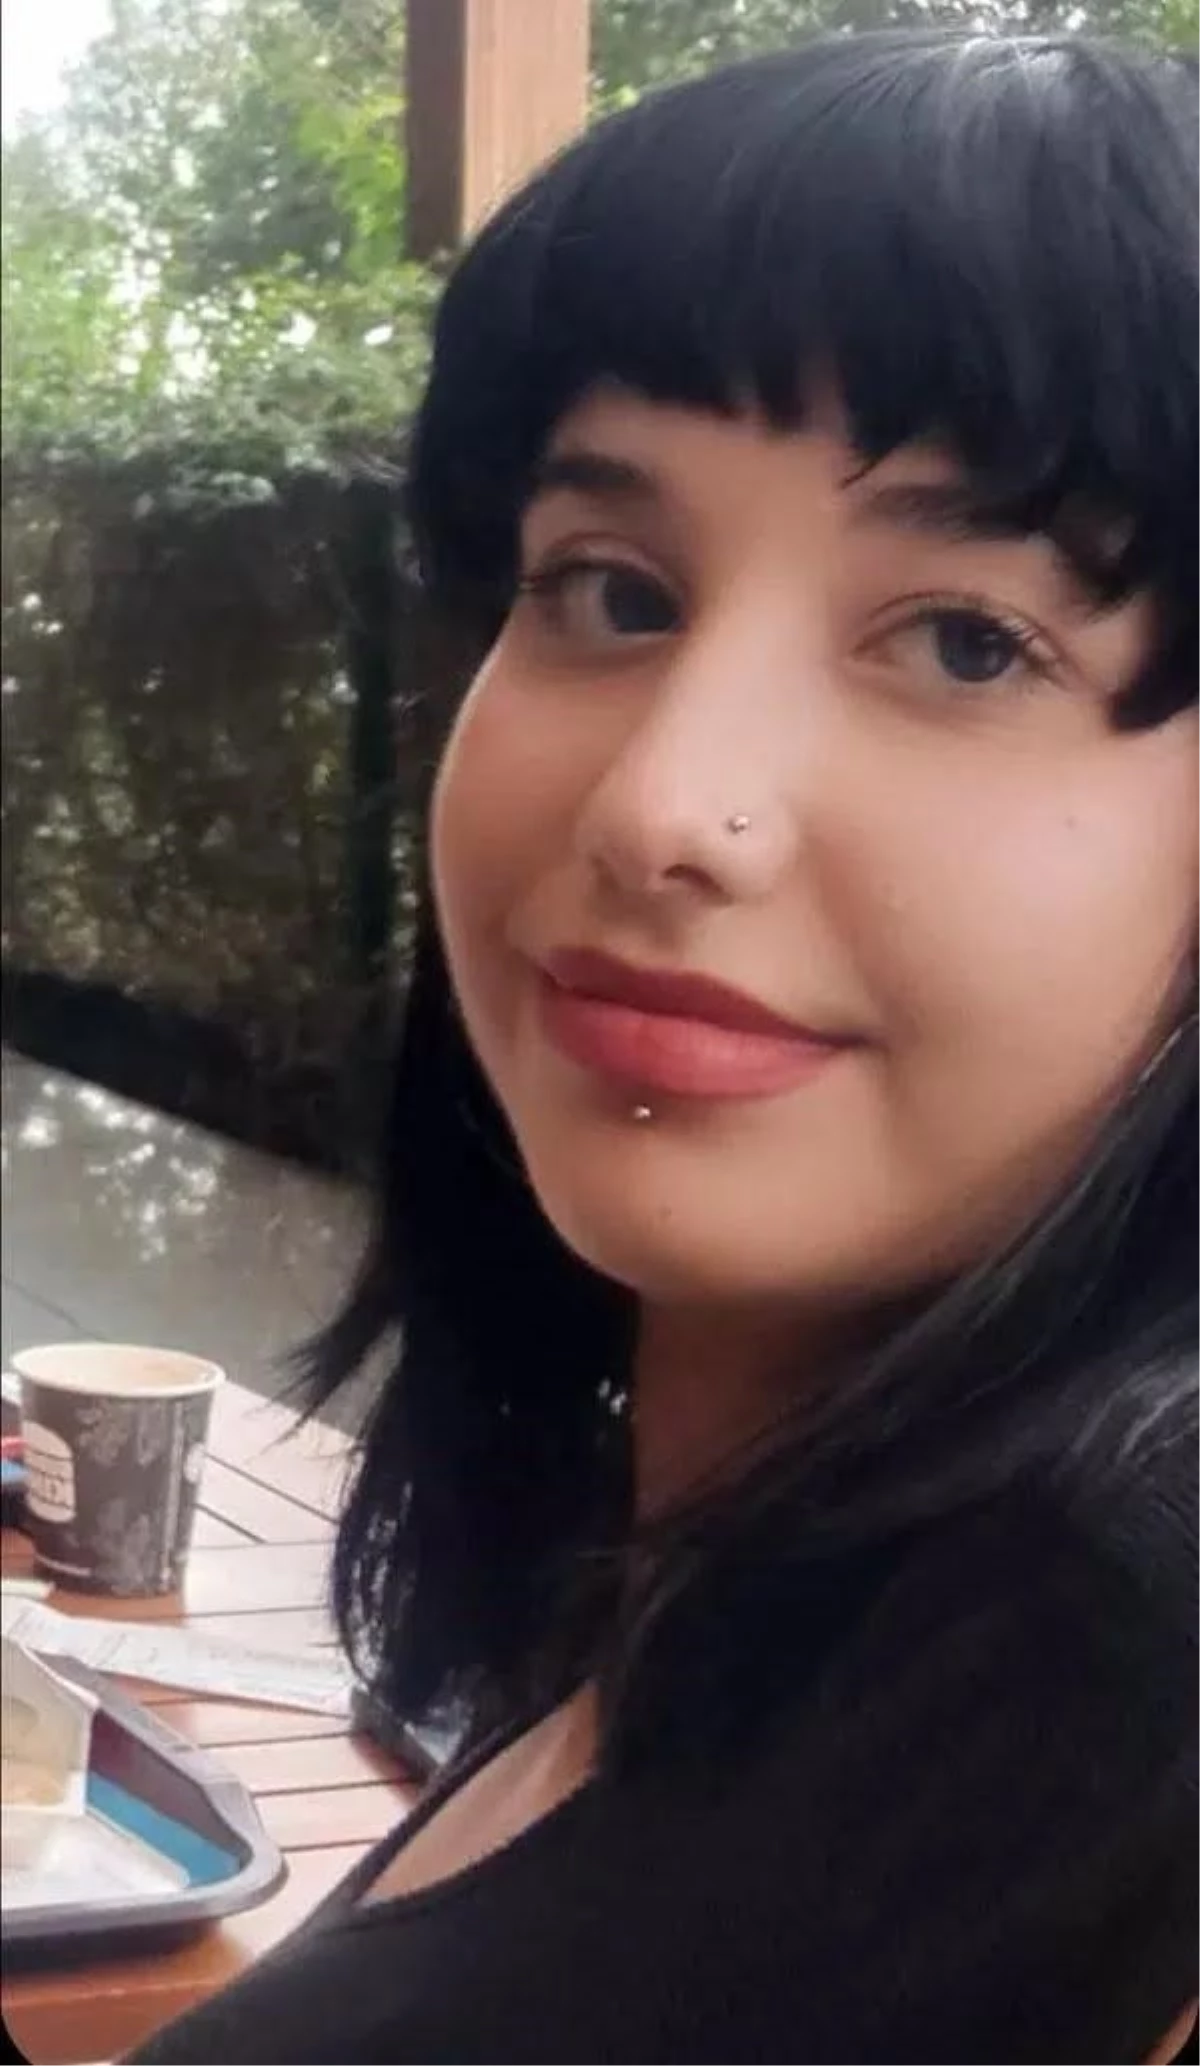 Antalya'da kaybolan genç kızın cansız bedeni bulundu